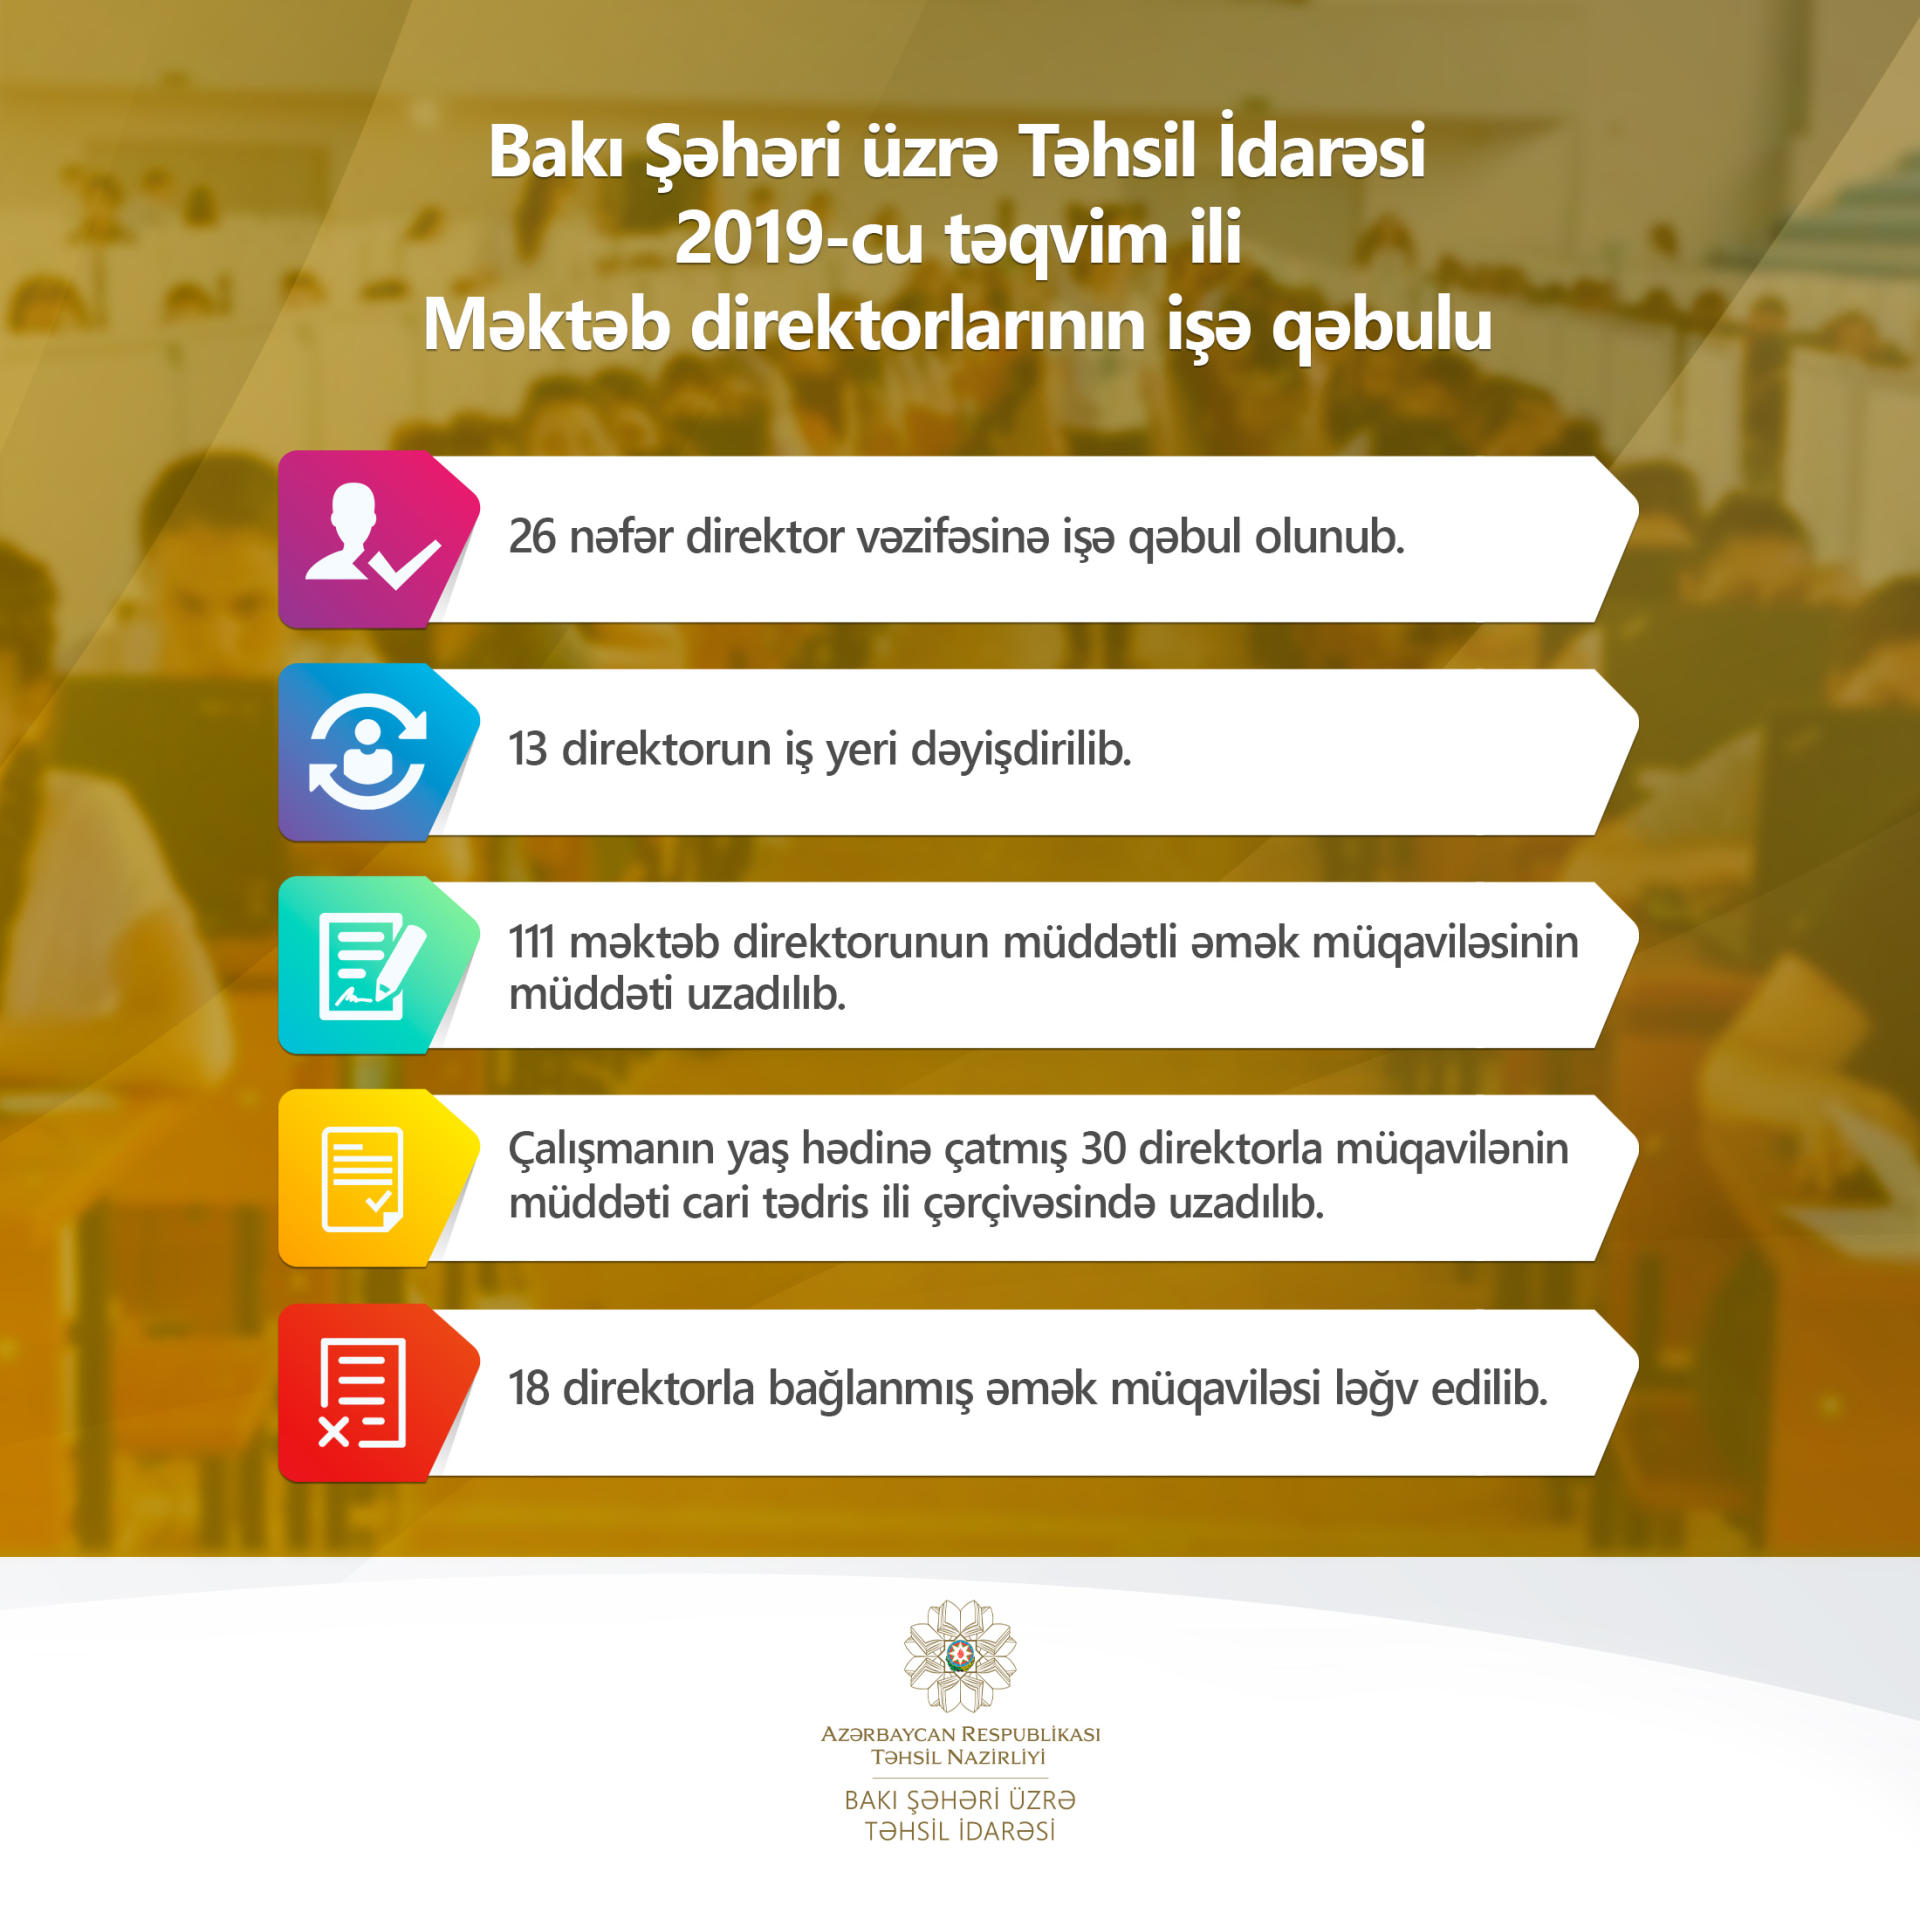 Расторгнуты трудовые договора с директорами 18 бакинских школ